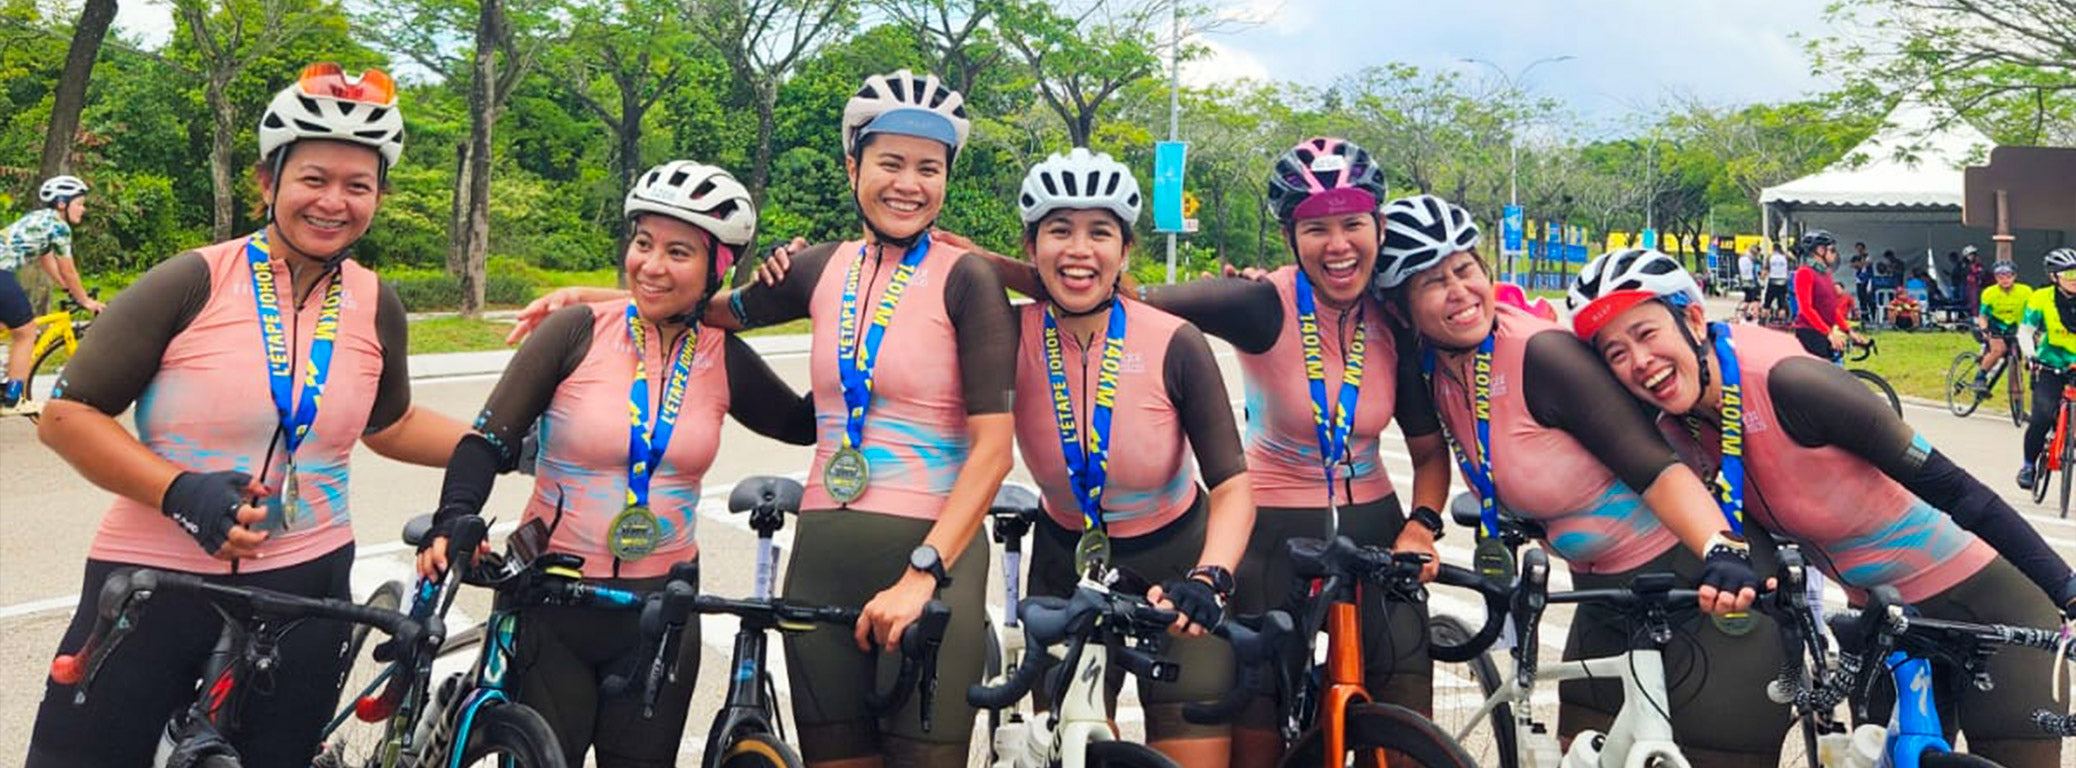 Pedal Bellas felices tras superar un reto ciclista de 140km en equipo.